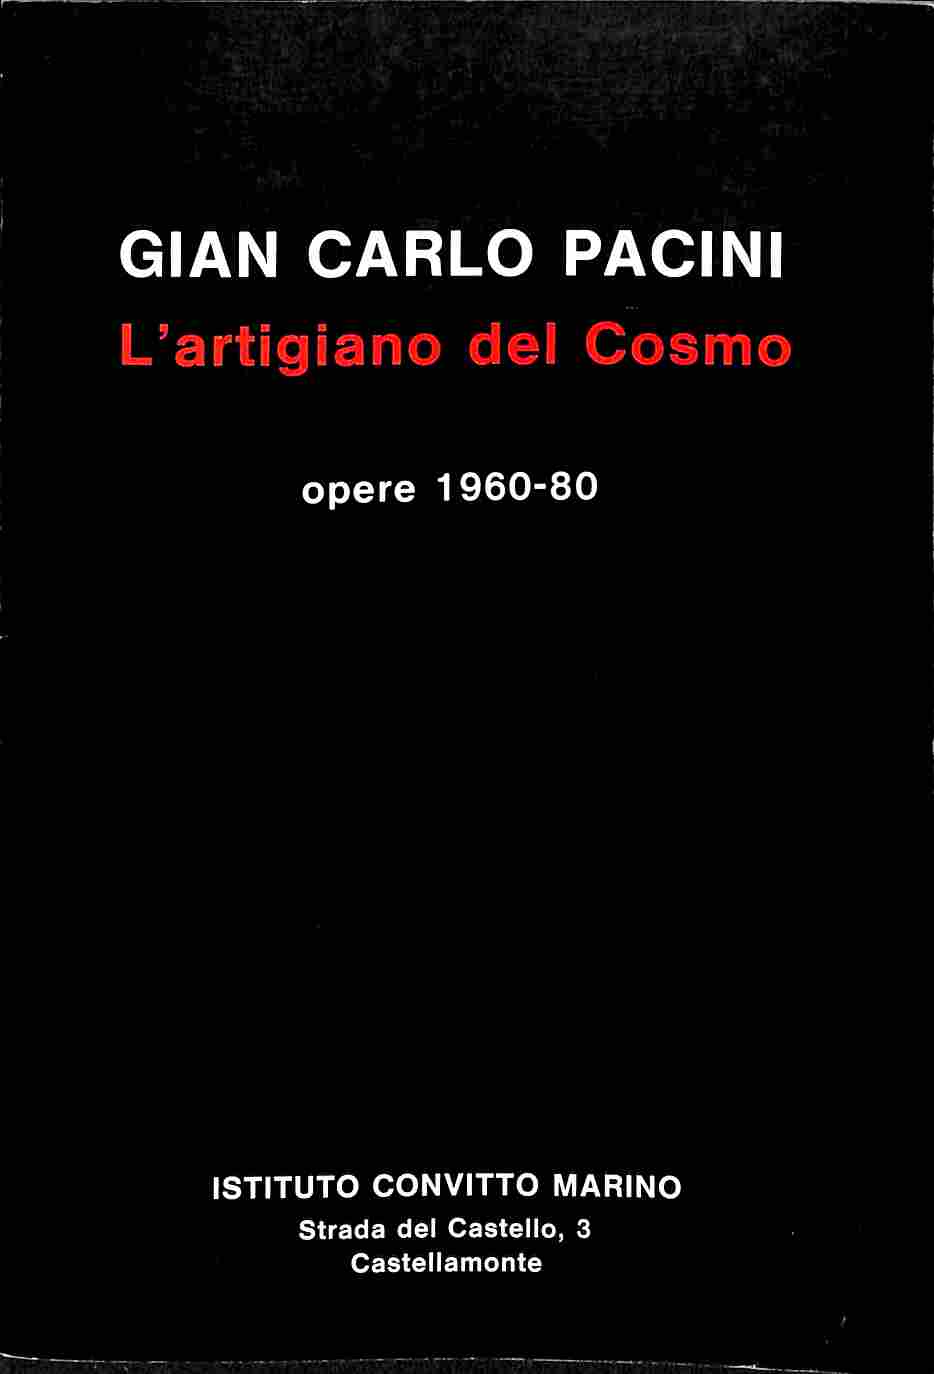 Gian Carlo Pacini. L'artigiano del Cosmo - opere 1960-80